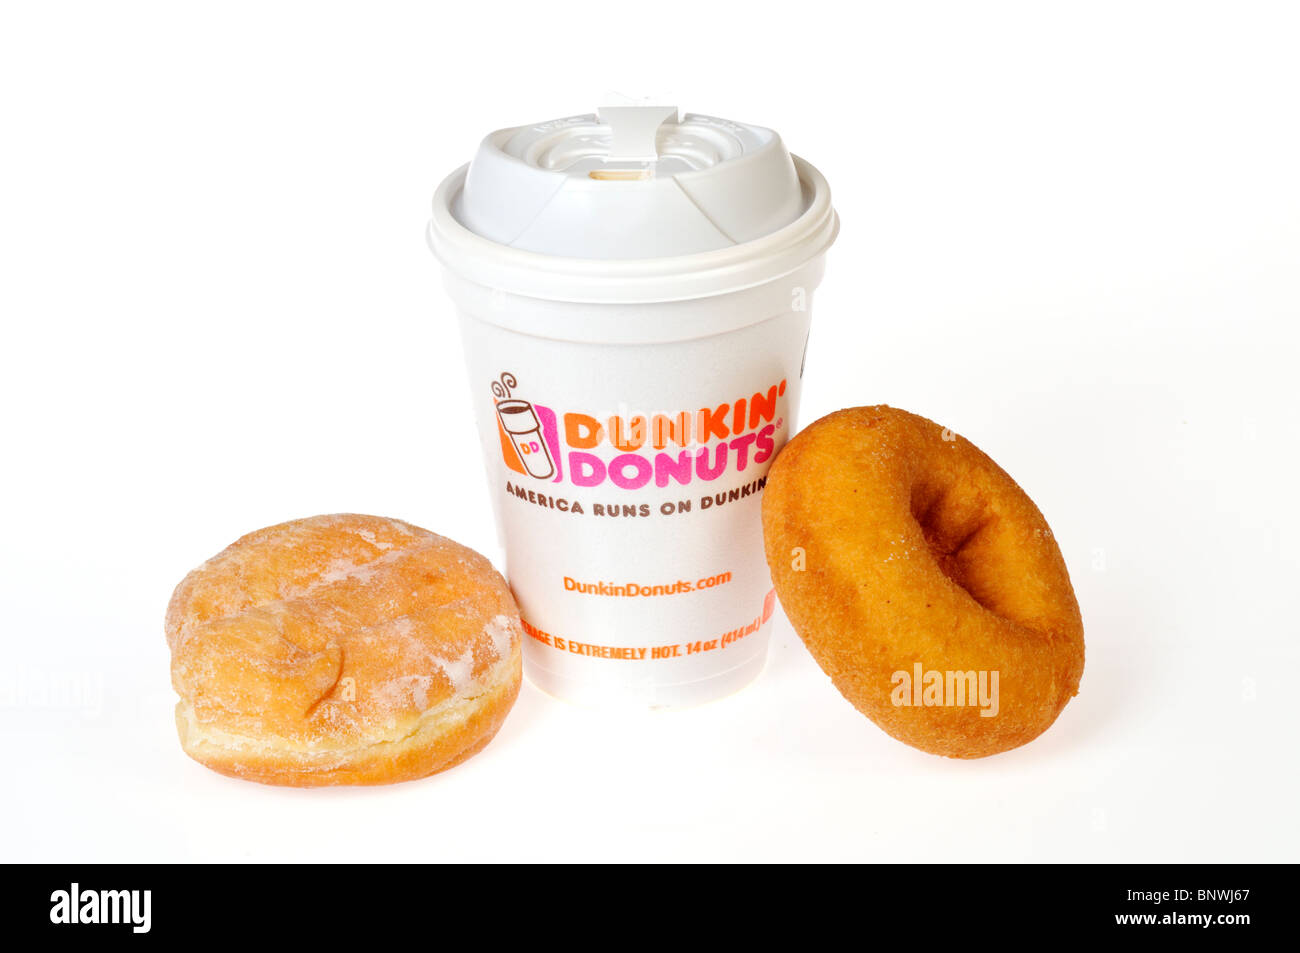 Eine Heisse Tasse Dunkin Donuts Kaffee Mit Einem Schlicht Und Gelee Donuts Auf Einer Dunkin Dounuts Serviette Auf Einem Weissen Hintergrund Stockfotografie Alamy